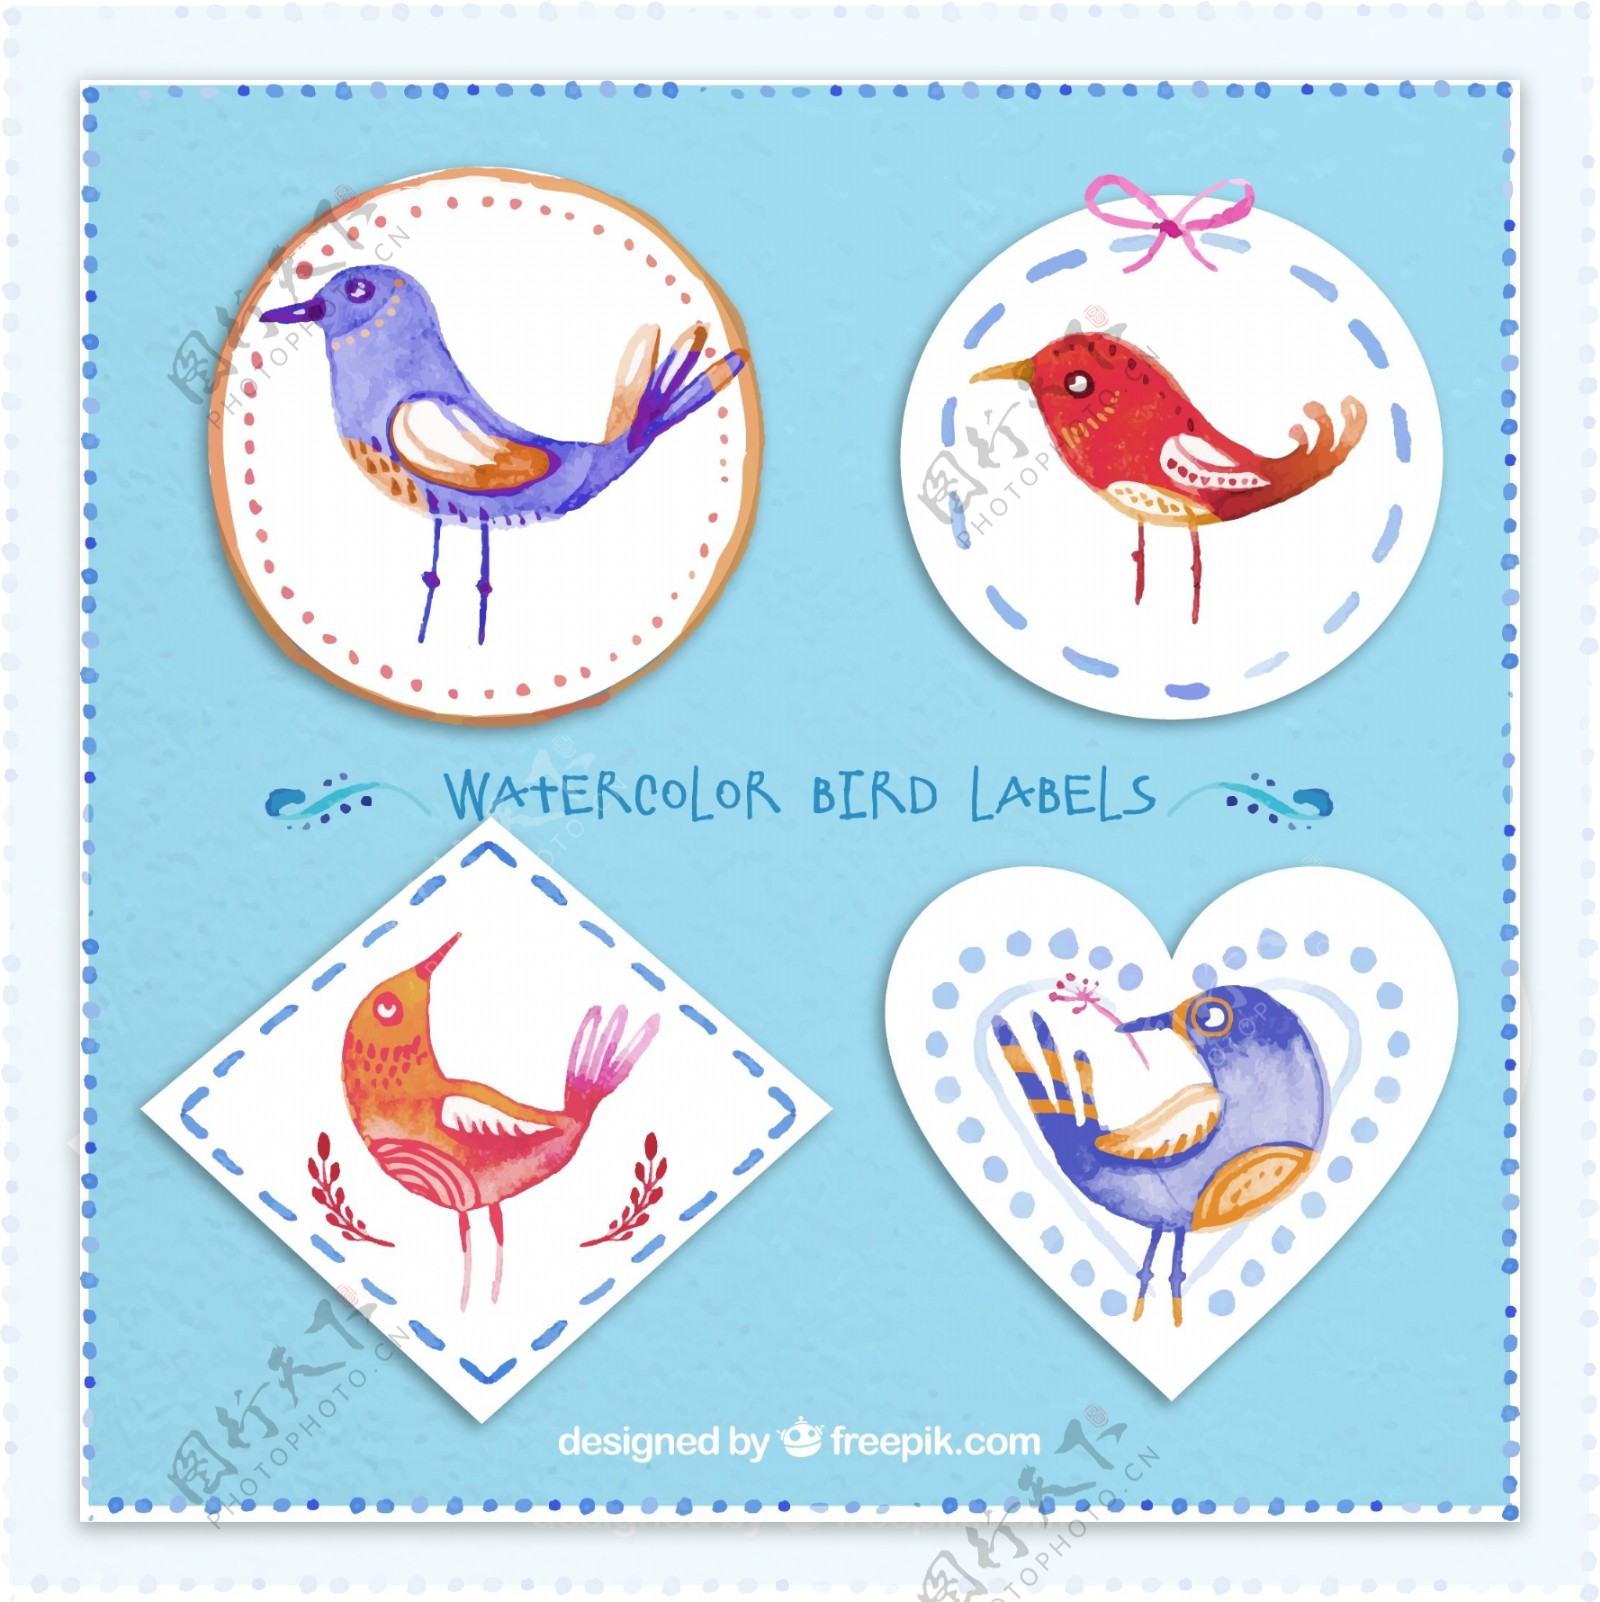 4款水彩绘鸟类标签矢量素材